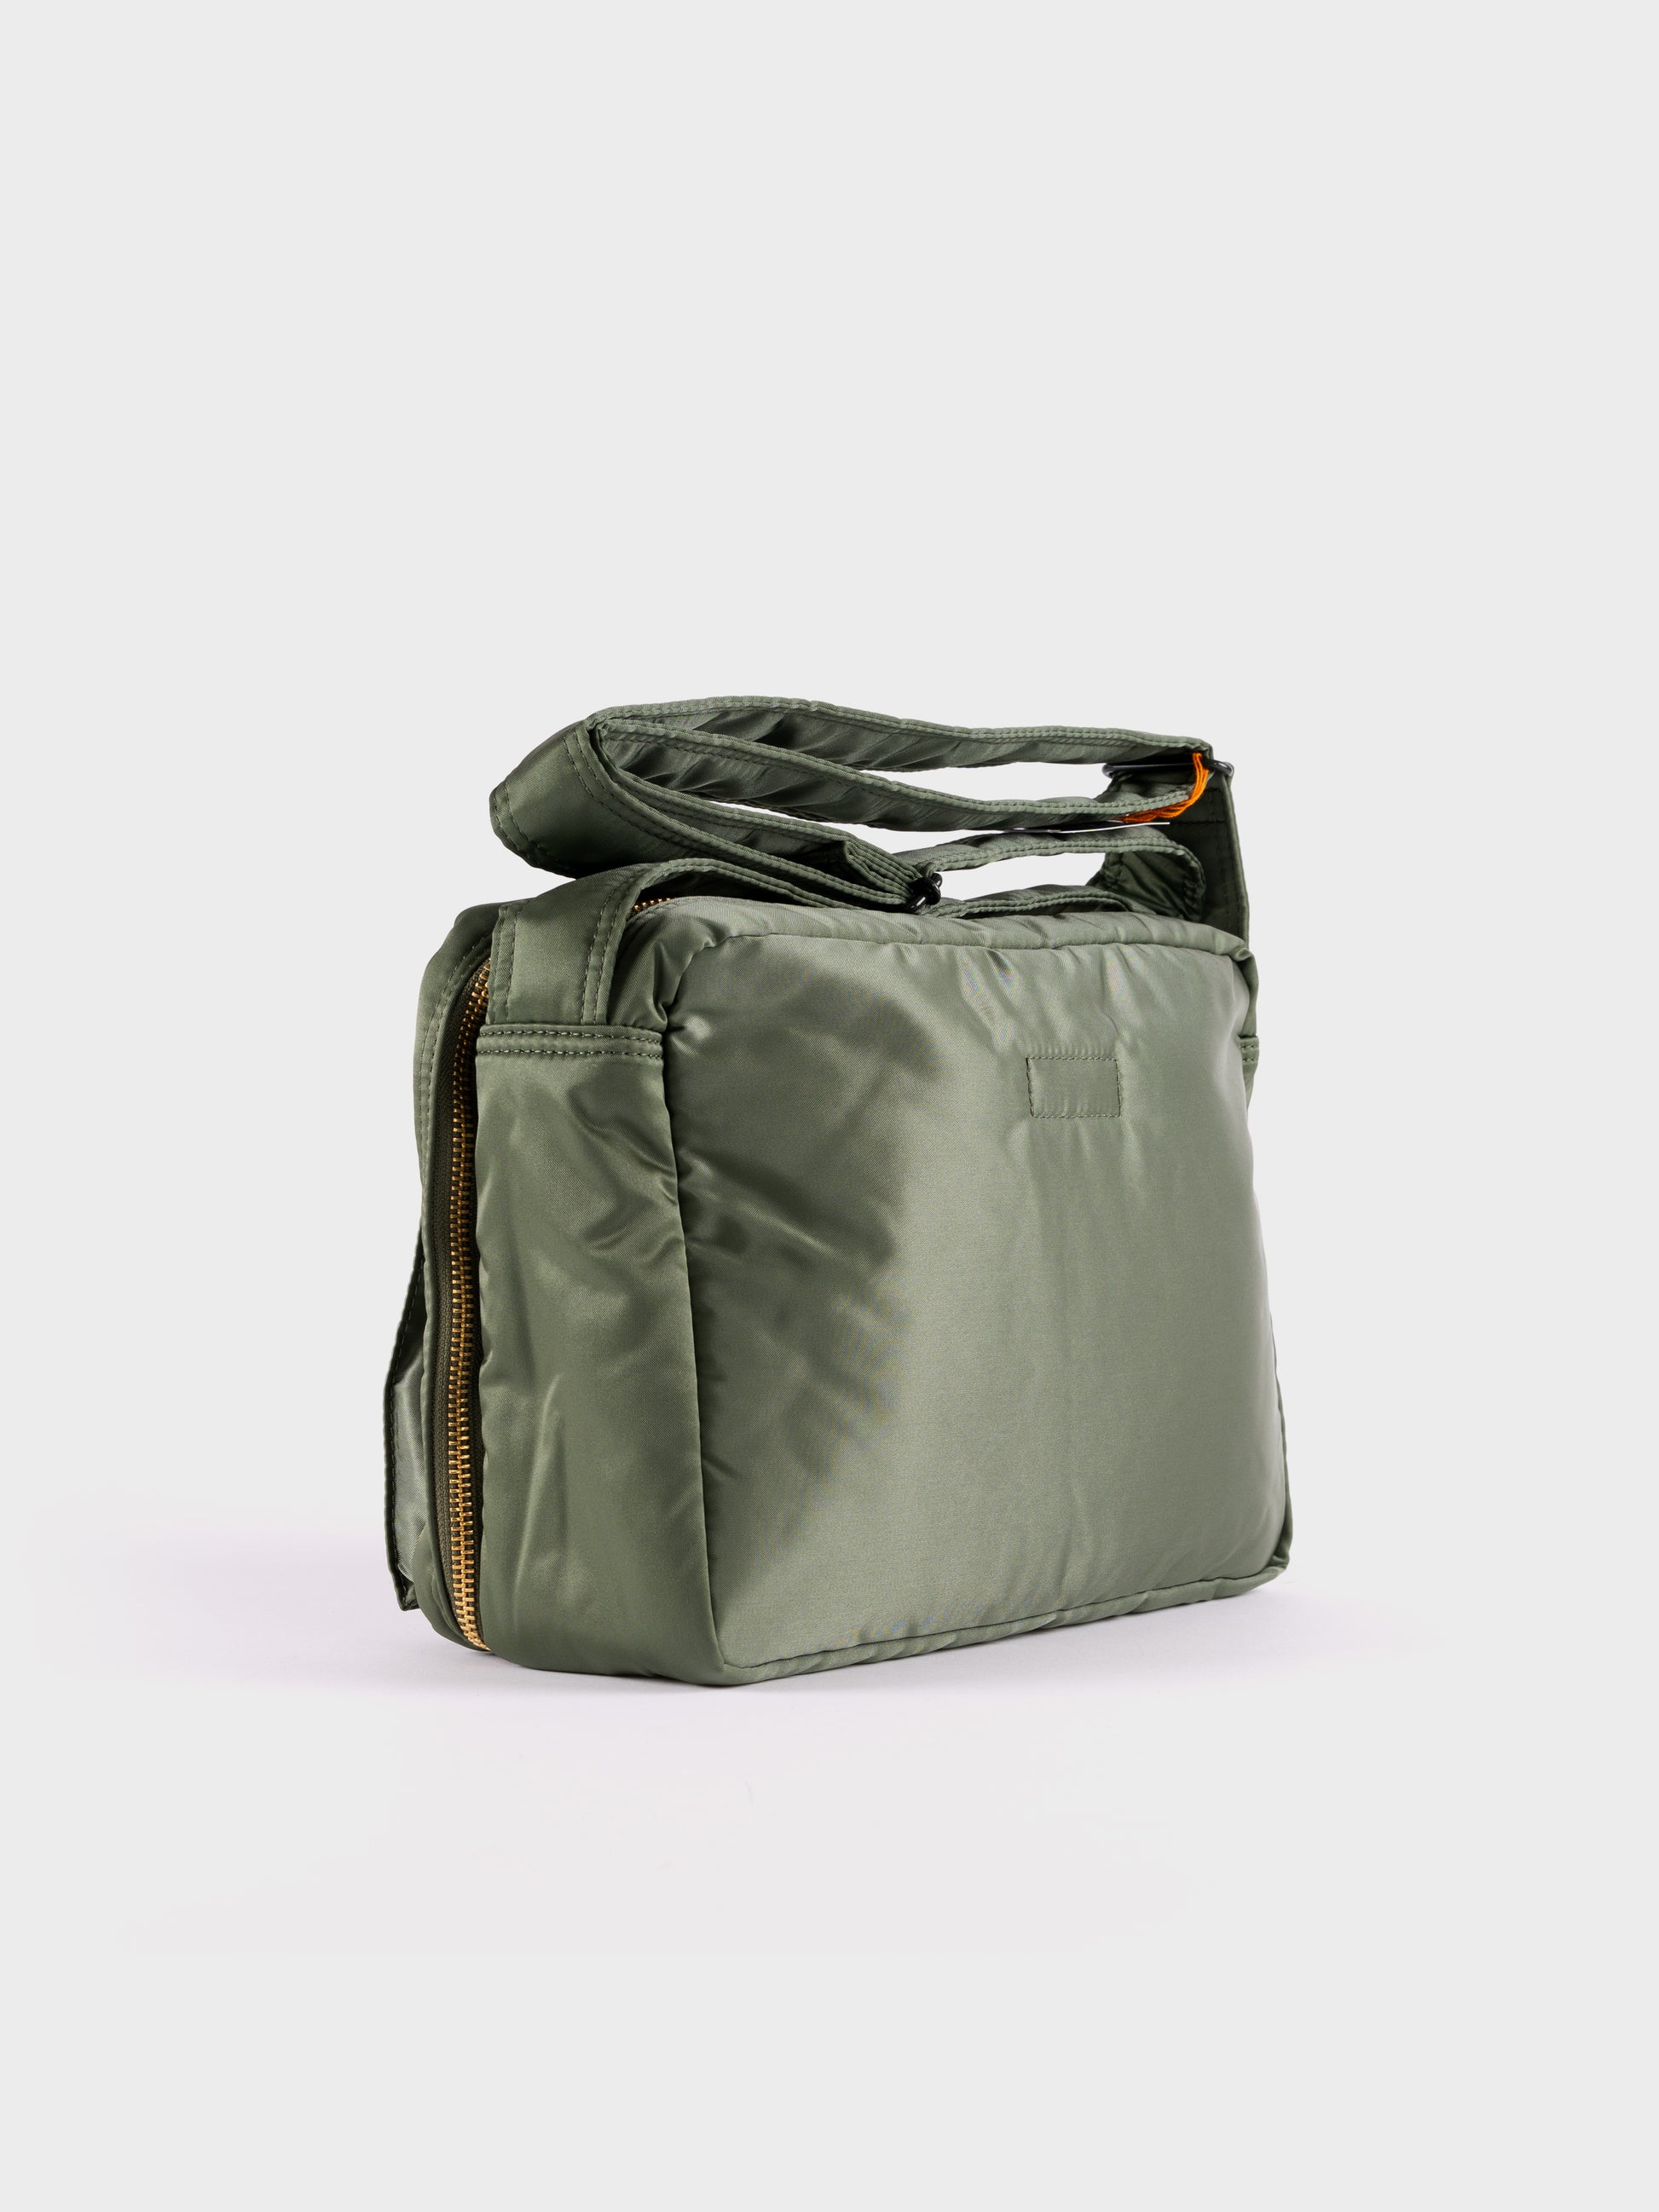 Porter-Yoshida & Co Tanker Shoulder Bag L - Sage Green